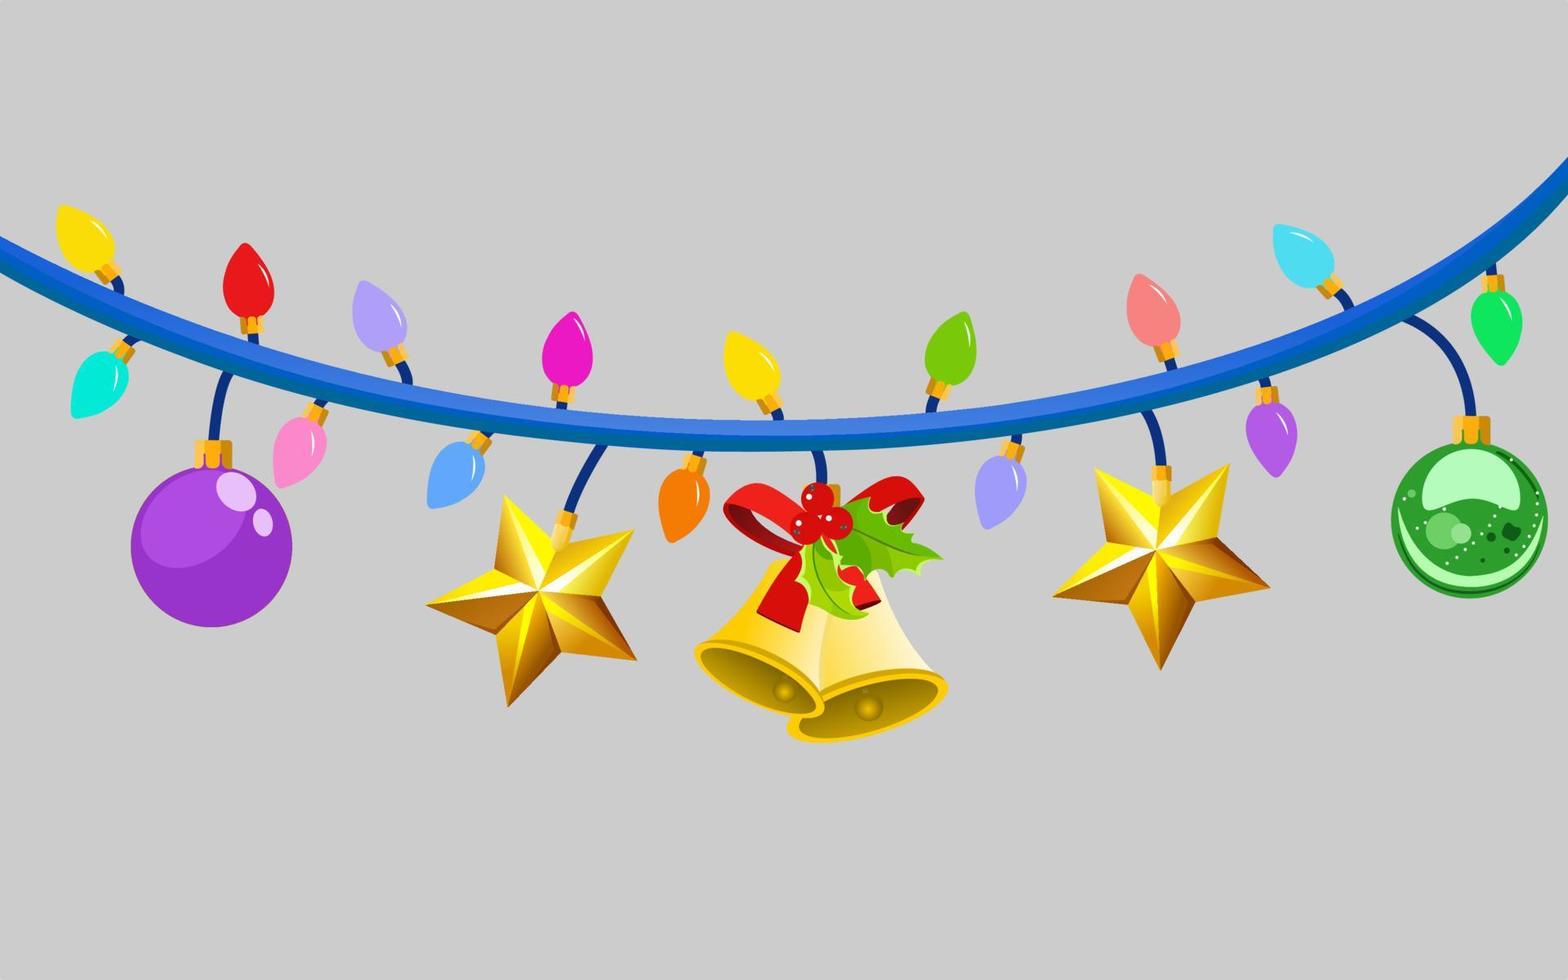 luzes de natal e ano novo em fundo cinza com decoração festiva vetor vermelho, amarelo, azul, verde, enfeites, estrela e fita hoolly sinos lâmpadas em cordas de arame. modelo de vetor festivo.